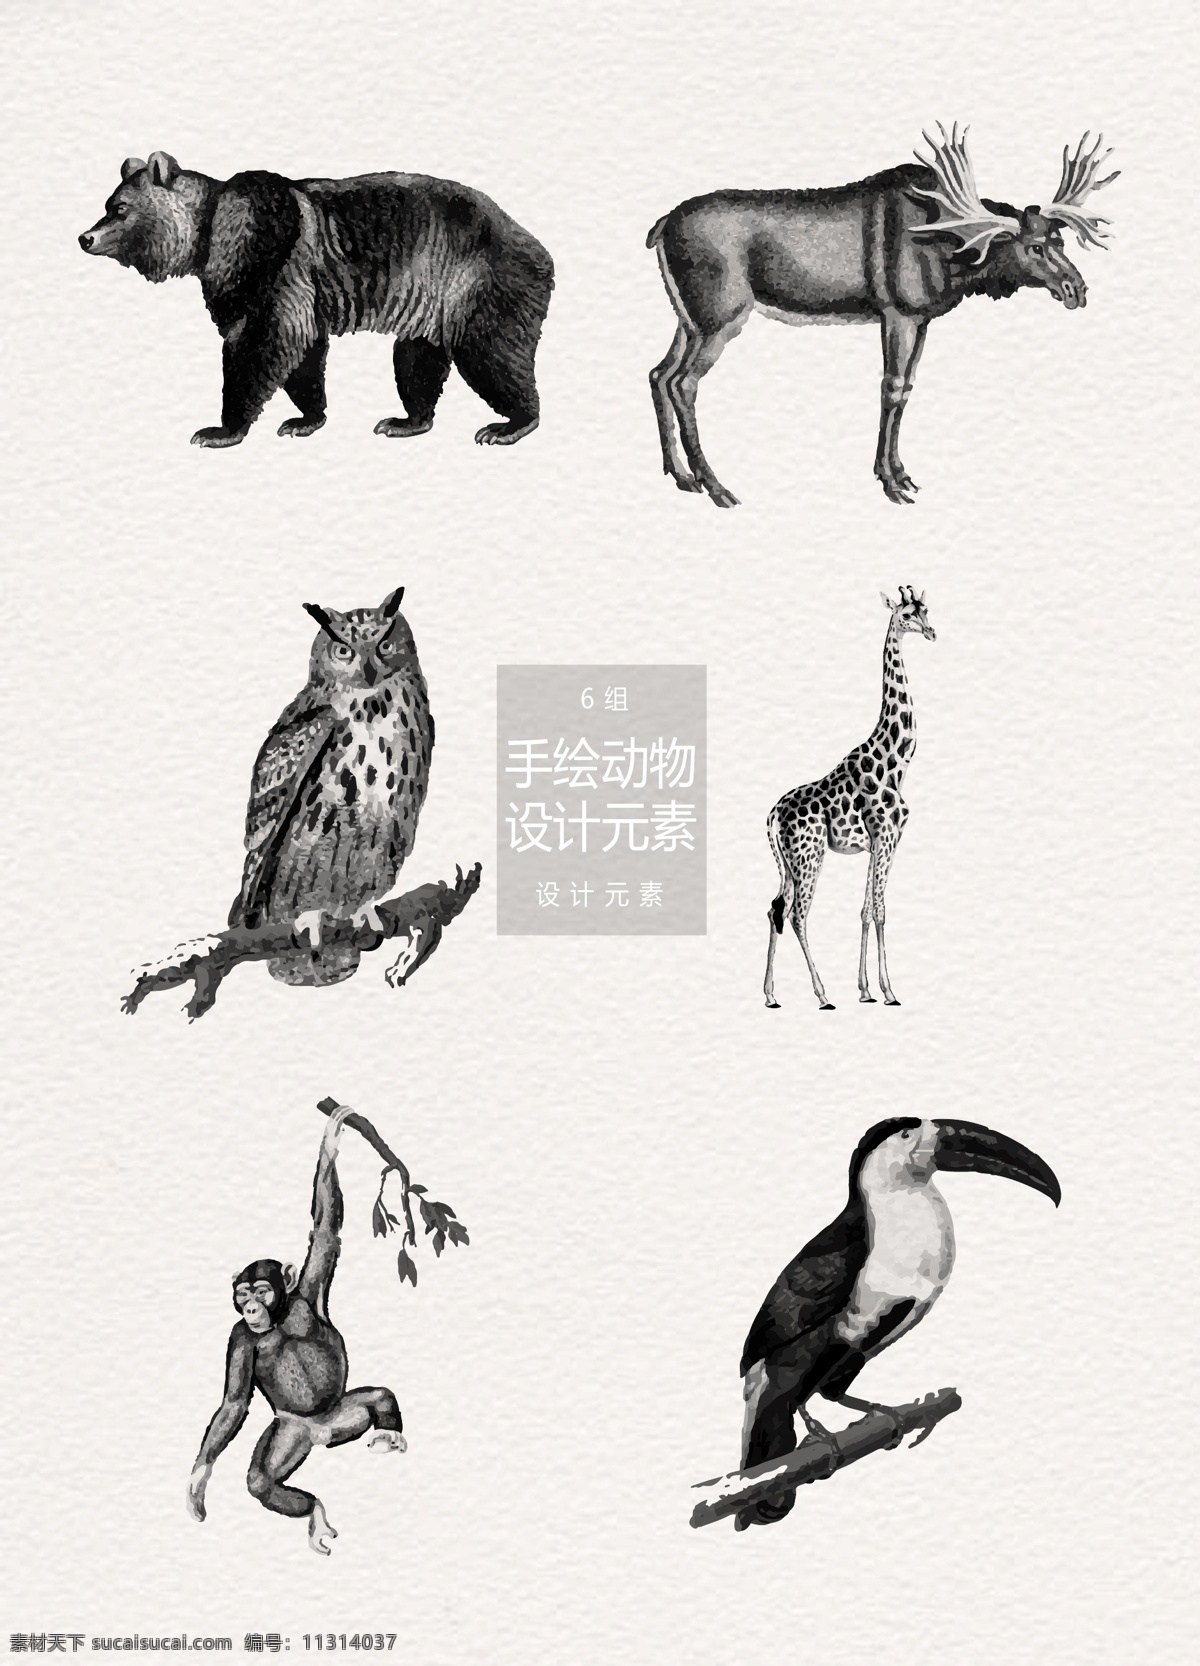 手绘 动物 插画 元素 森林 猫头鹰 长颈鹿 猴子 动物插画 手绘动物 熊 麋鹿 鹦鹉 猩猩